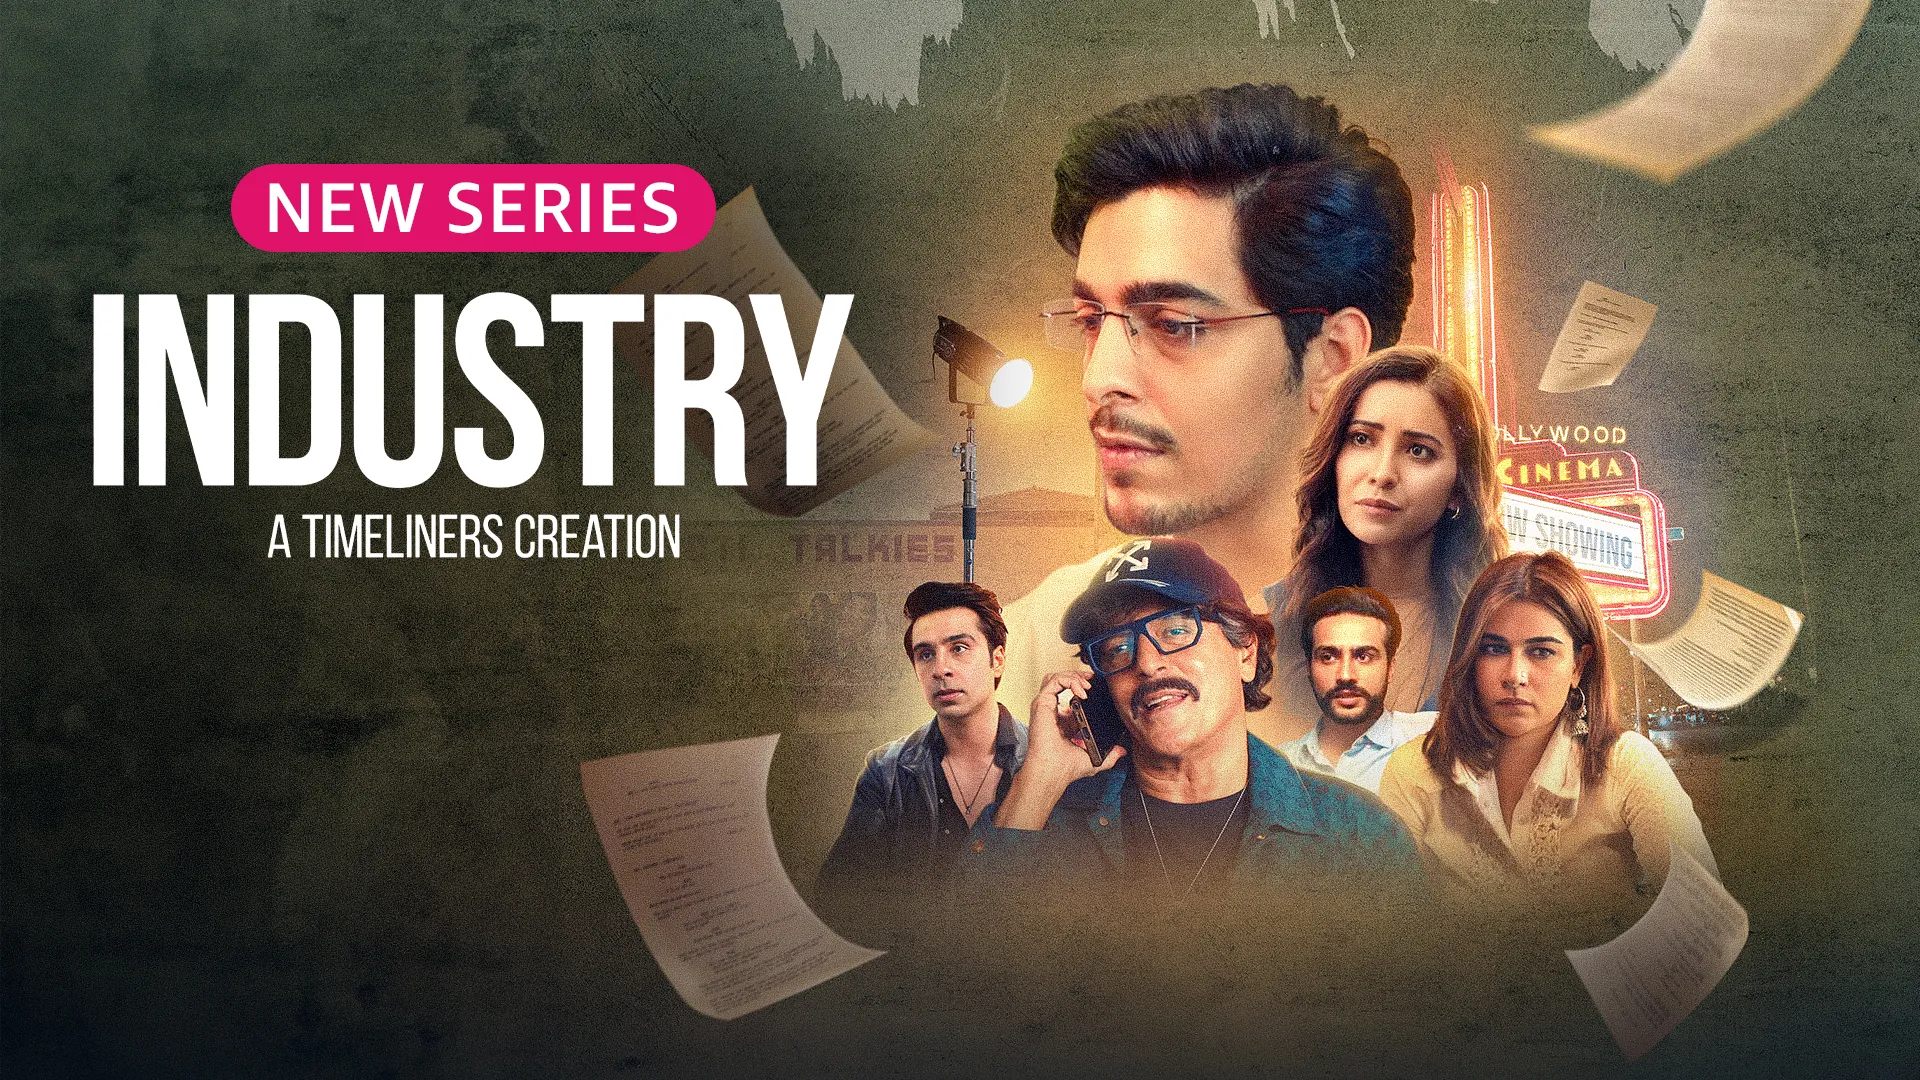 Watch Industry Season 1 Episode 1 Online for Free on Amazon miniTV